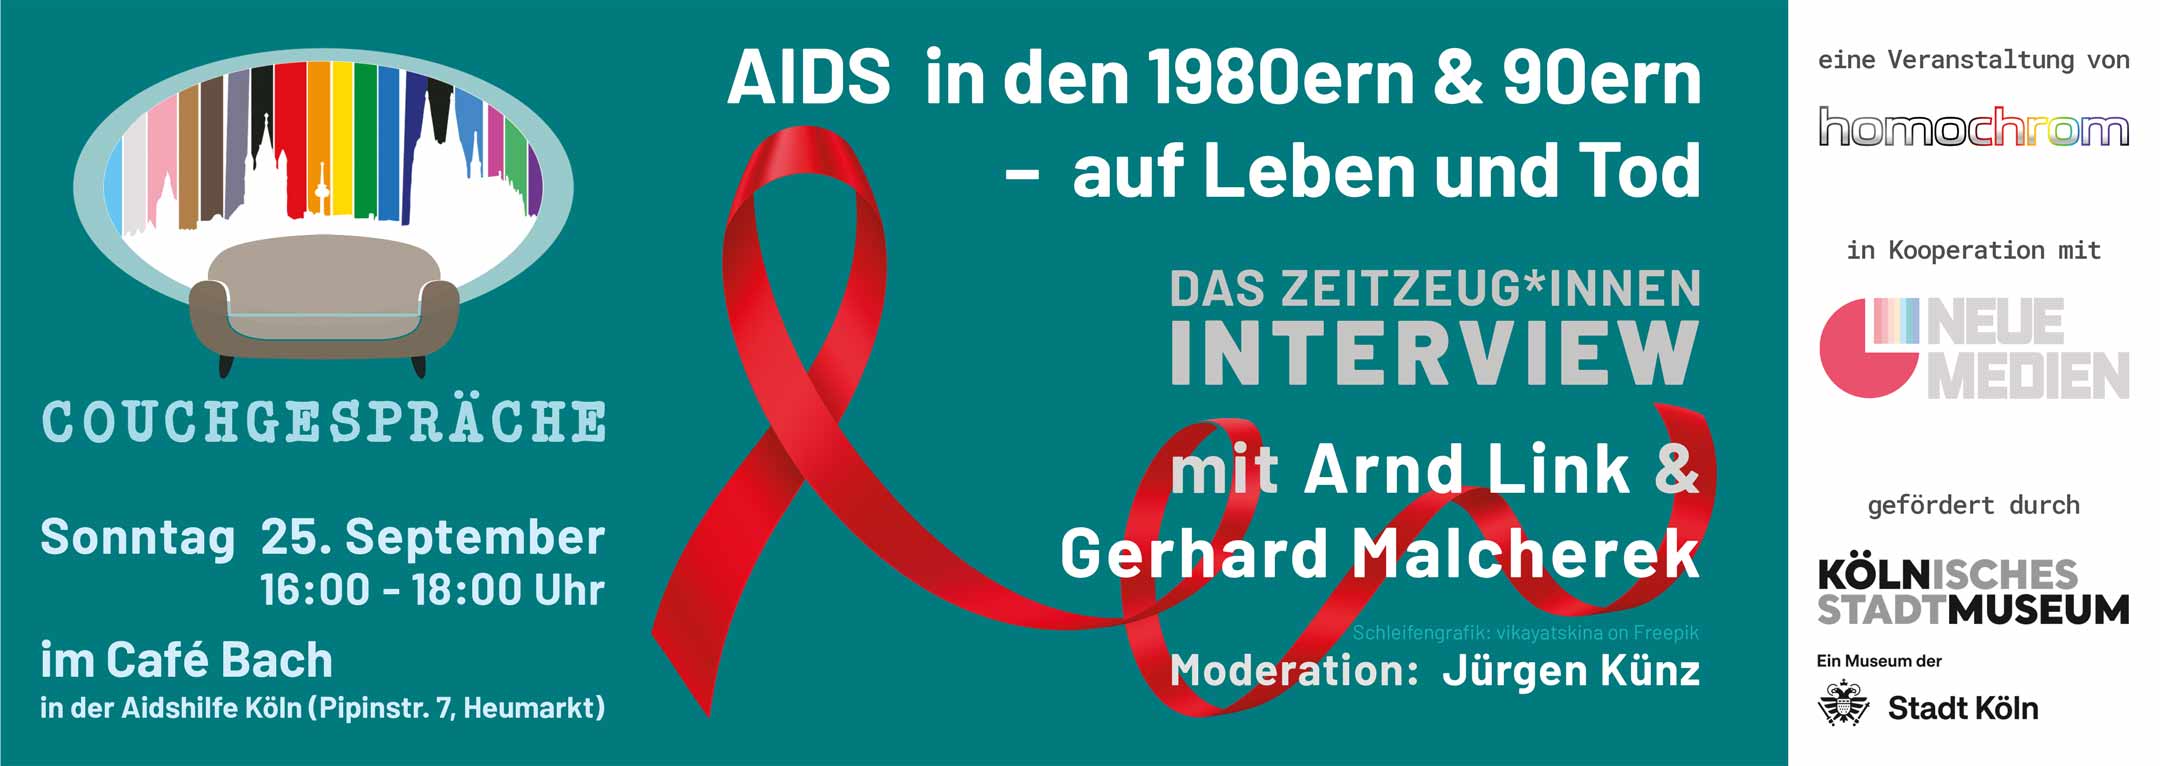 Slider Couchgespräche September 2022: AIDS in den 1980ern und 90ern – auf Leben und Tod